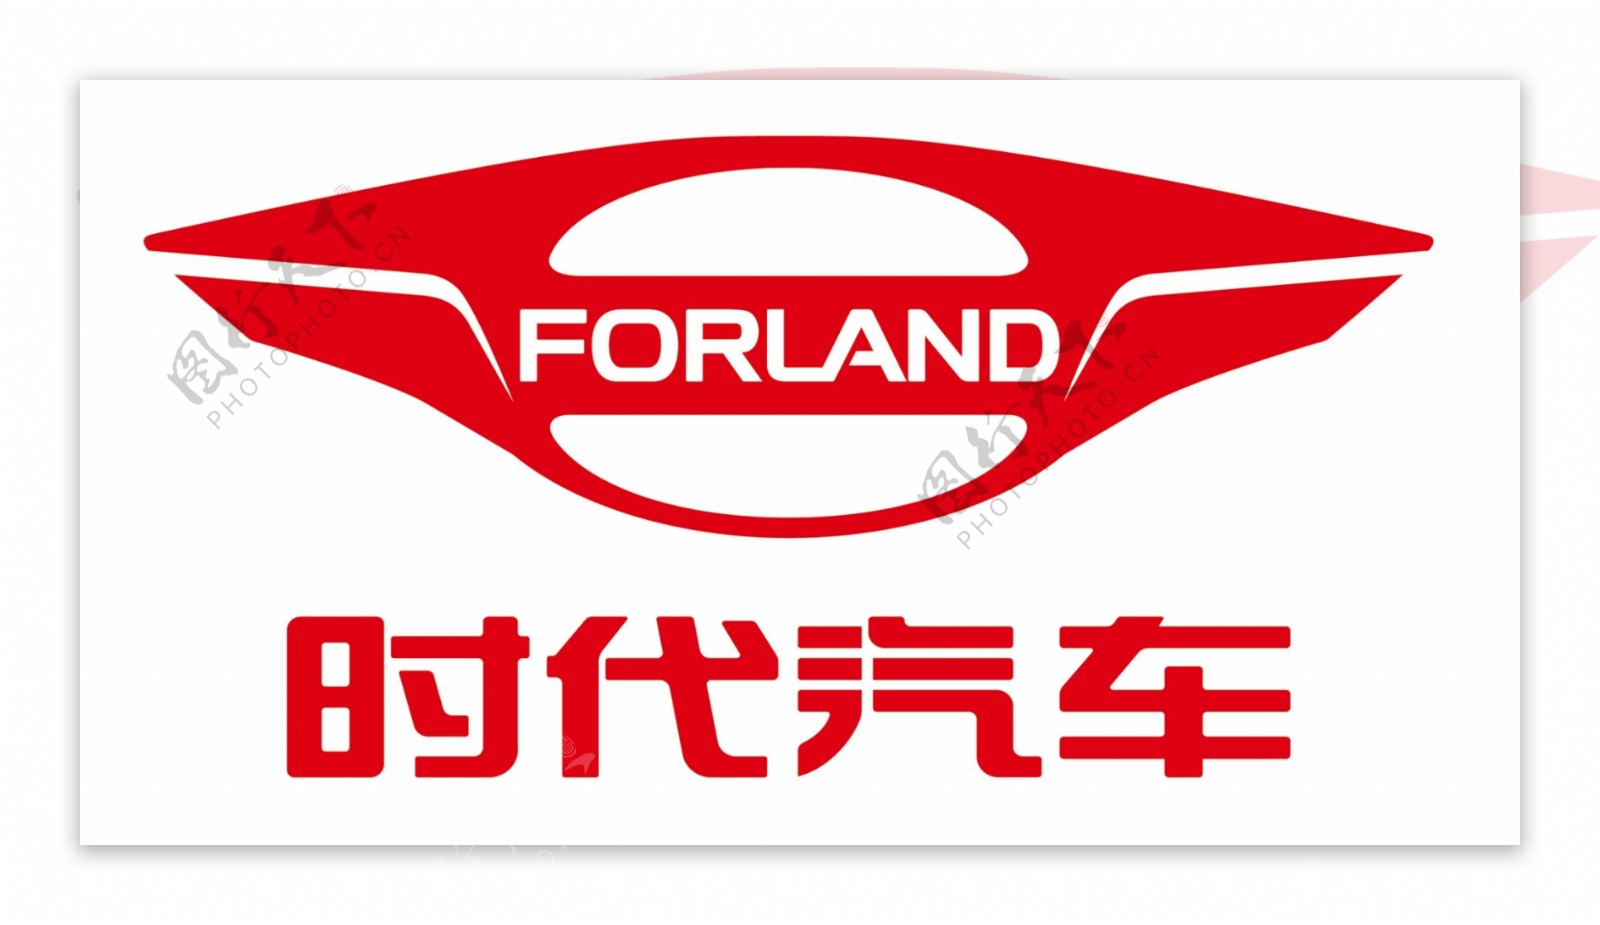 福田时代汽车新版logo